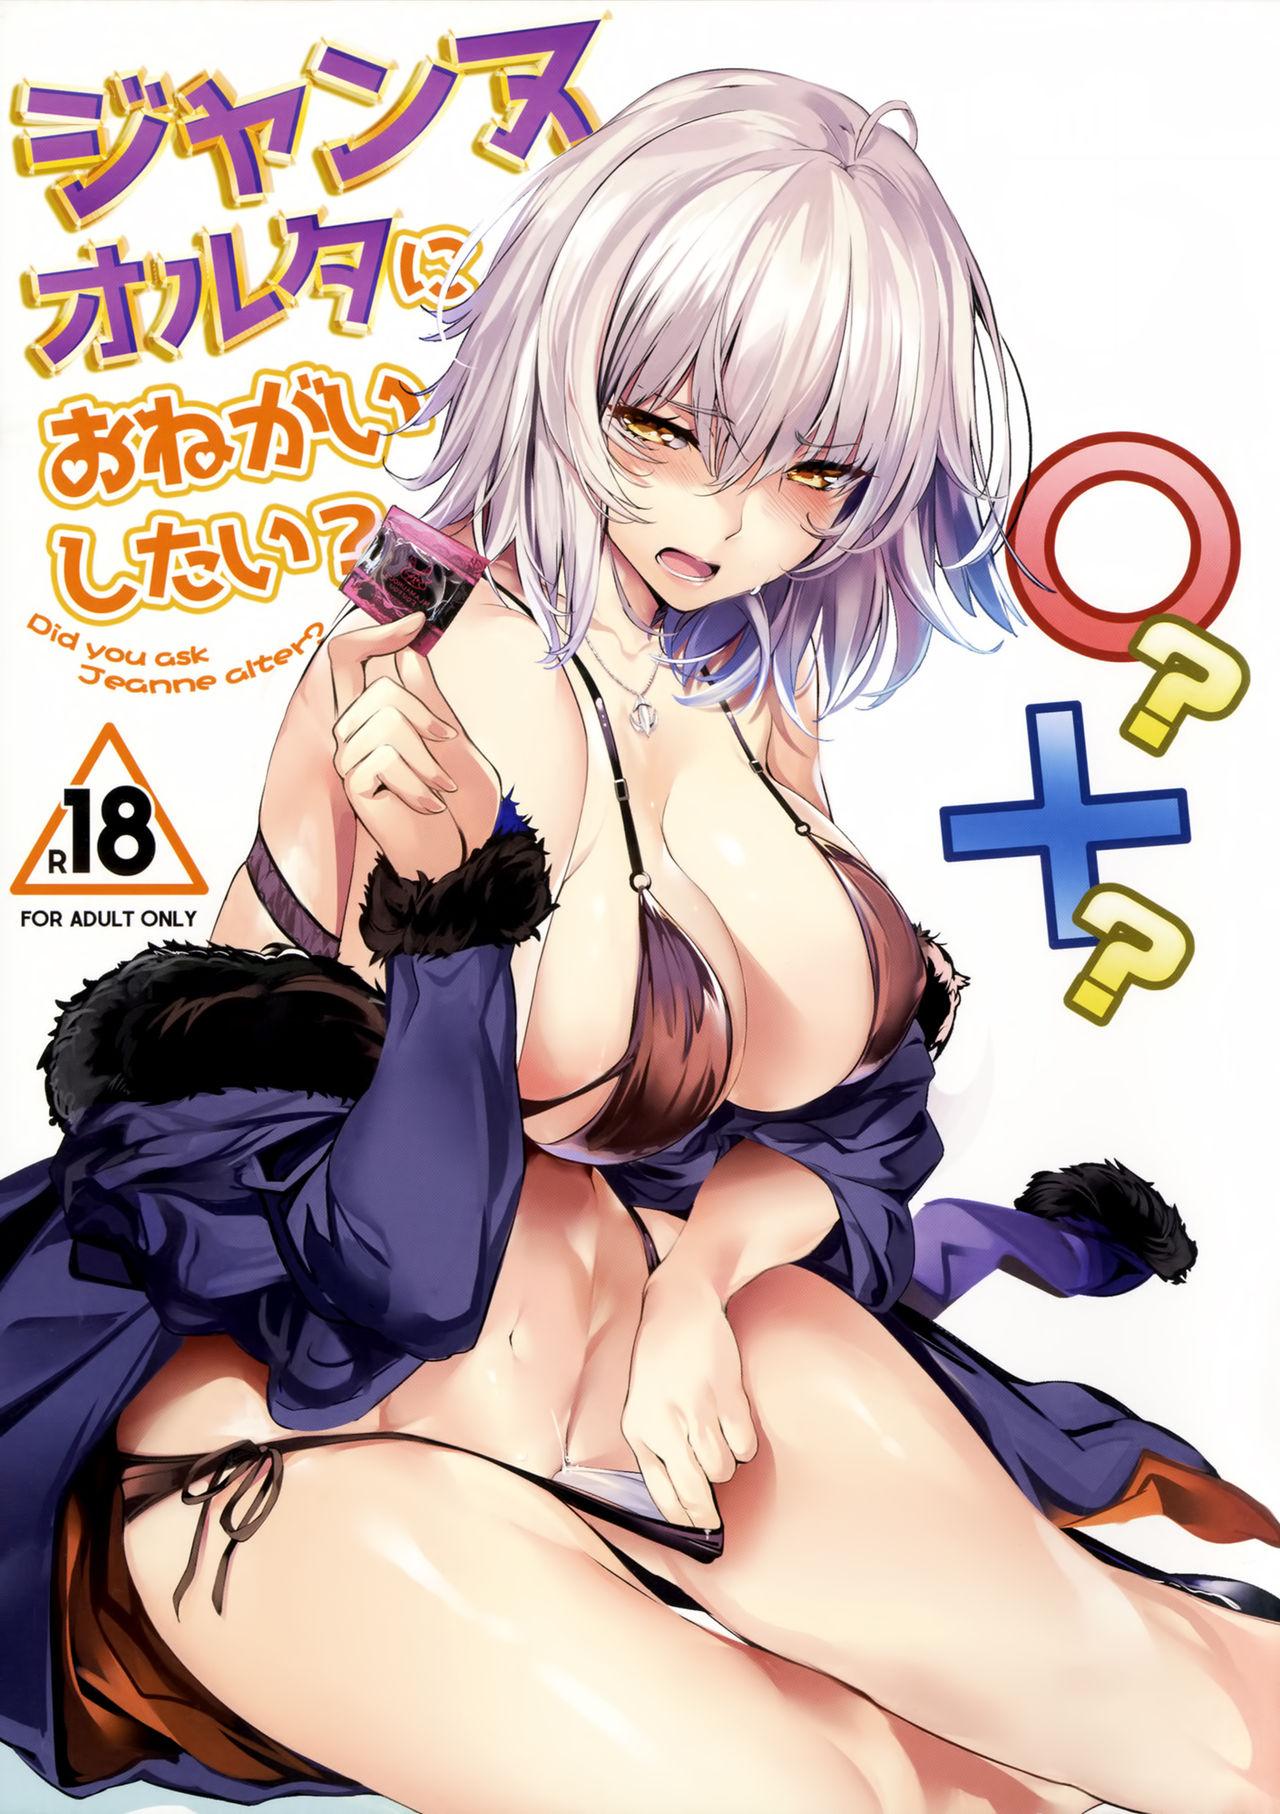 Interracial Hardcore Jeanne Alter ni Onegai Shitai? + Omake Shikishi - Fate grand order Hard Sex - Picture 1